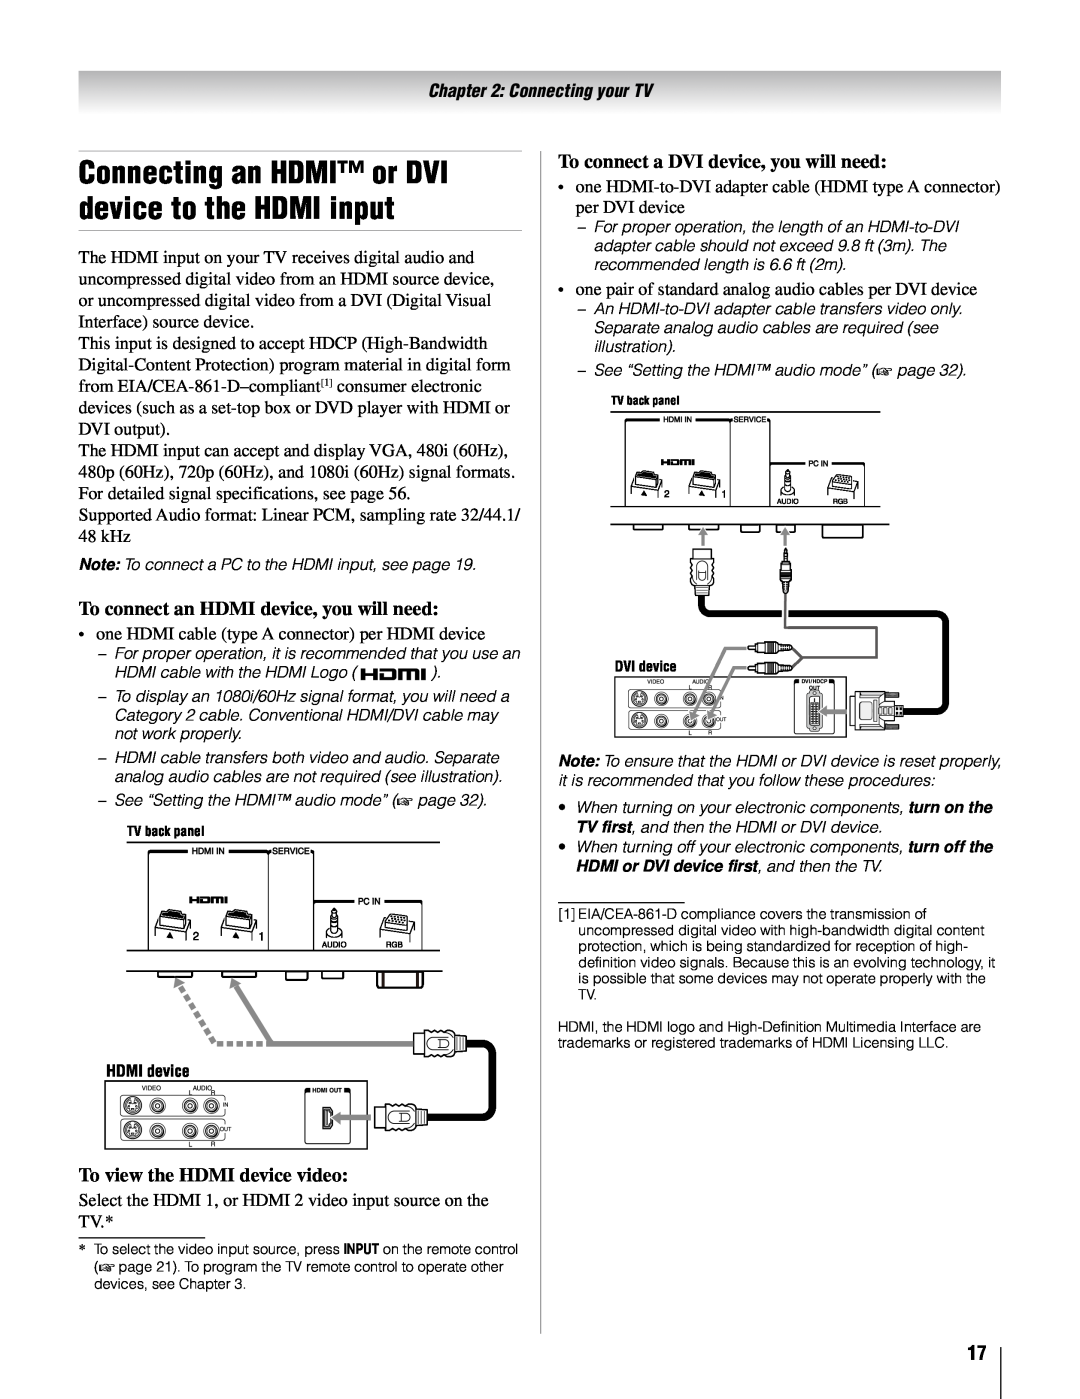 Toshiba 26AV502U, 32AV502U Connecting an HDMI or DVI device to the HDMI input, To connect an HDMI device, you will need 